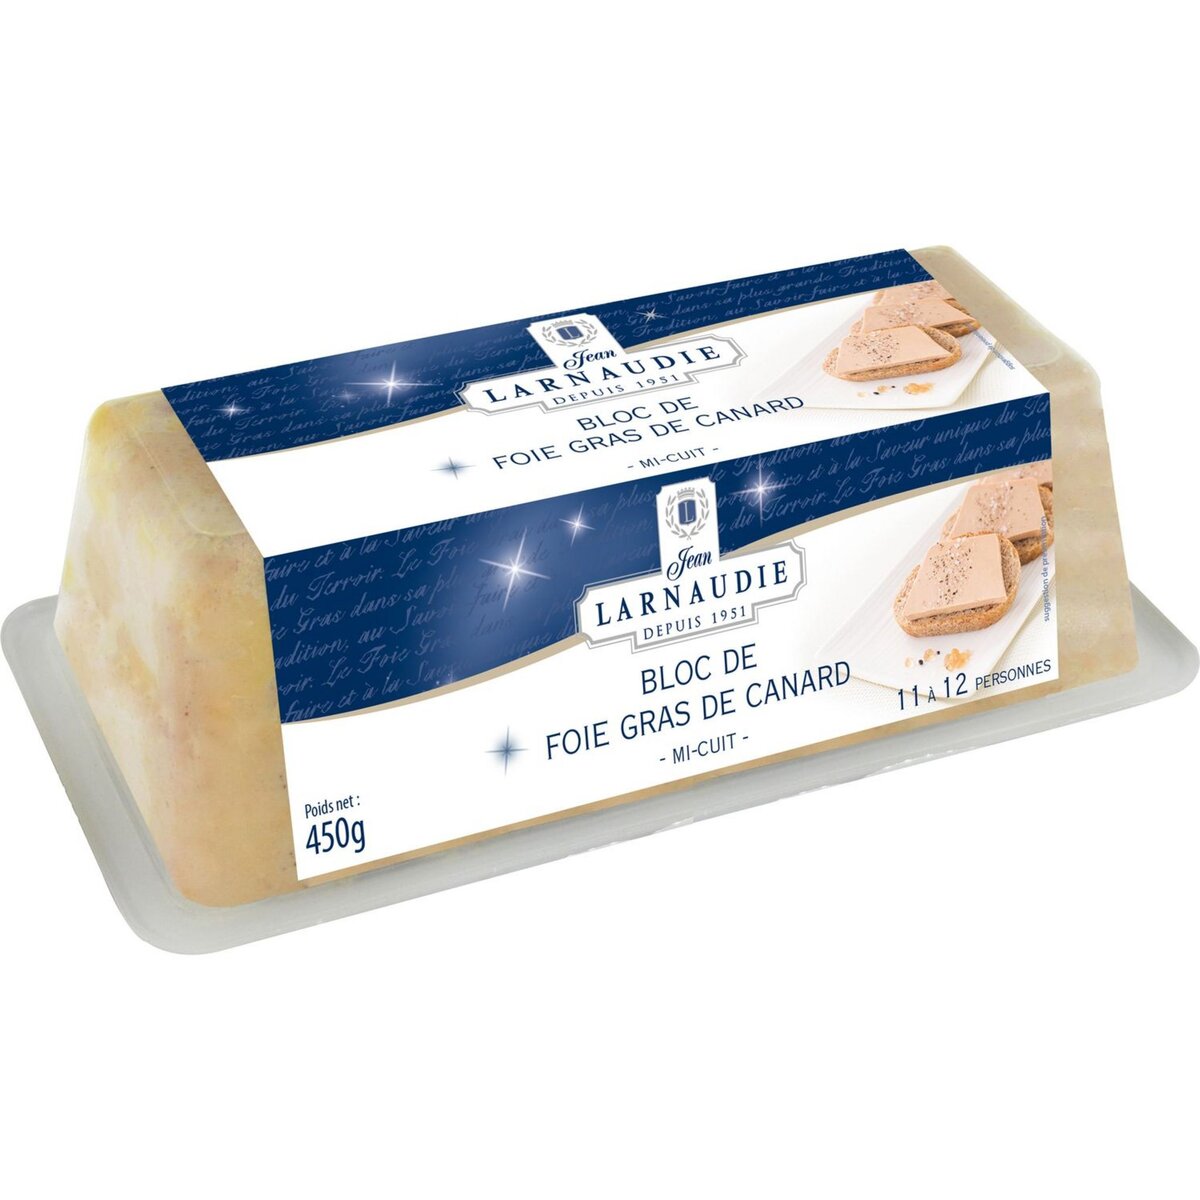 JEAN LARNAUDIE Bloc de foie gras de canard mi-cuit 11-12 portions 450g